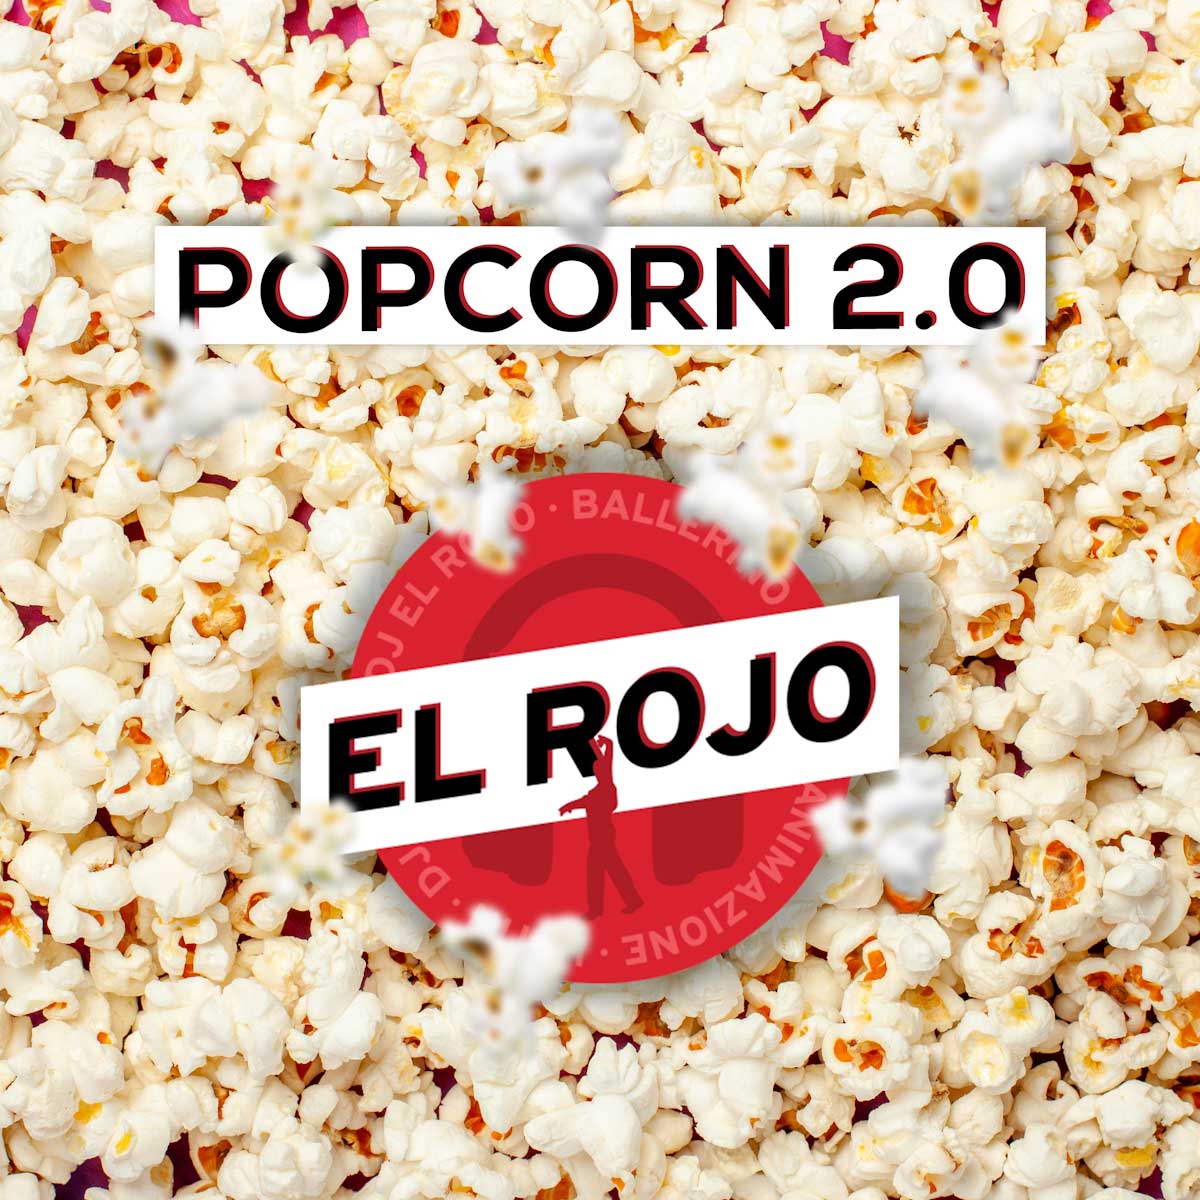 Al momento stai visualizzando “Popcorn 2.0” è il singolo d’esordio di El Rojo